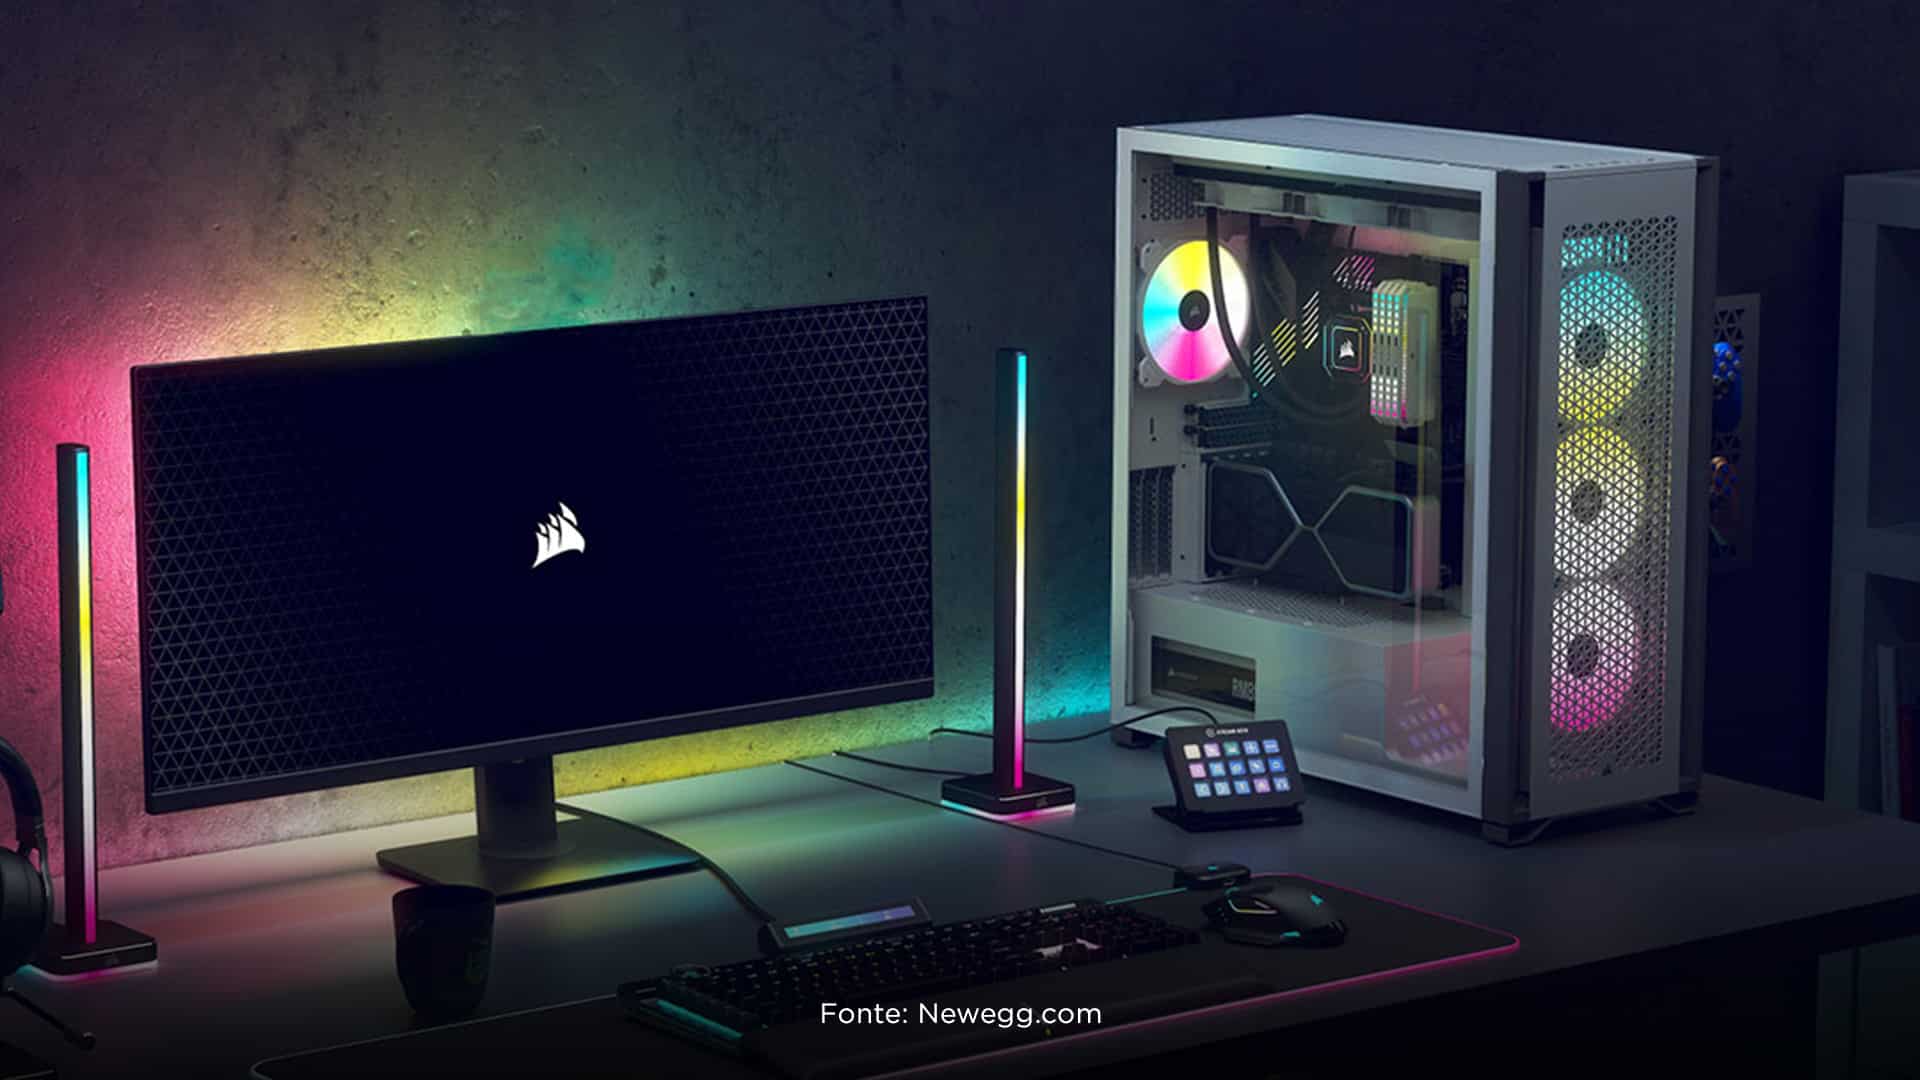 imagem de uma mesa com monitor com leads, teclado, mouse e gabinete full tower gamer com leads